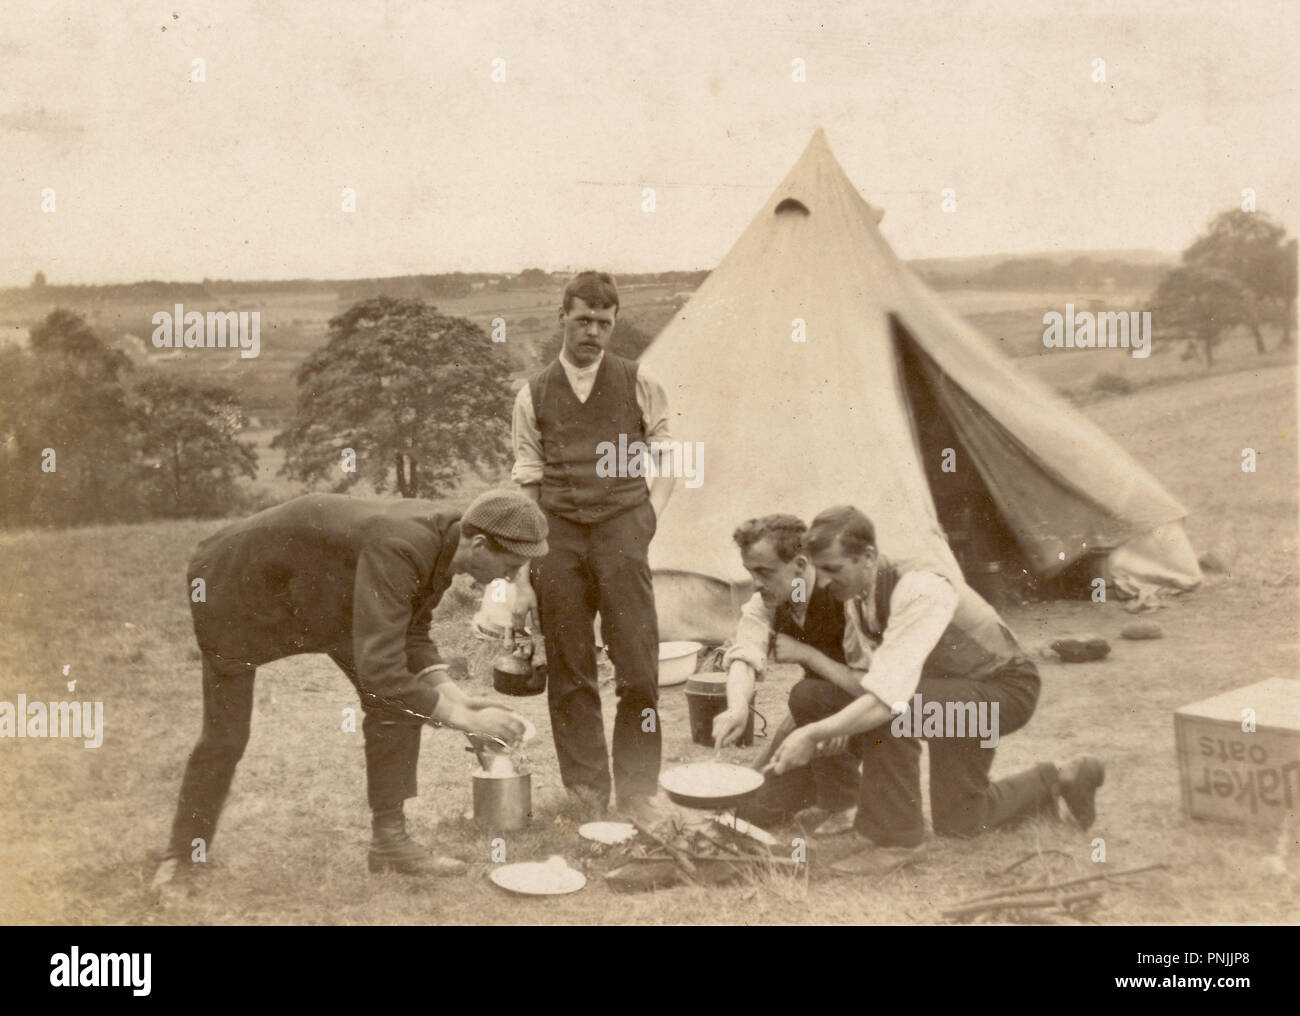 Carte postale édouardienne de jeunes hommes campant à la campagne, cuisinant sur un feu ouvert à l'extérieur de tente en toile, vers 1905, U.K Banque D'Images